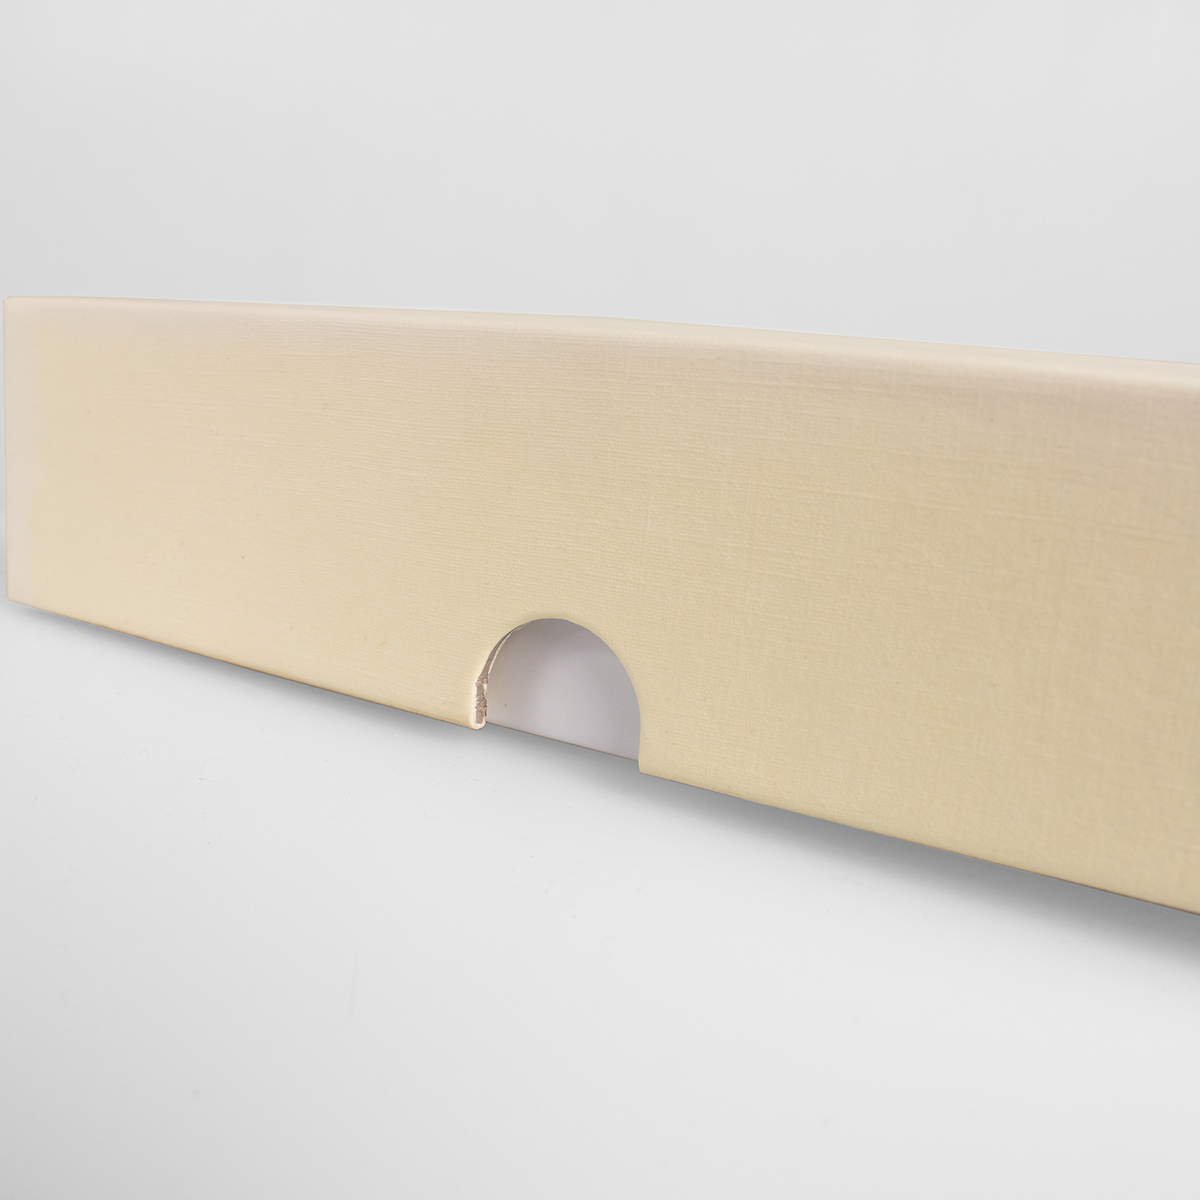 Подарочная коробка крышка-дно, 21.5 x 10.5 x 5 см. "Радуга", бежевый, белый